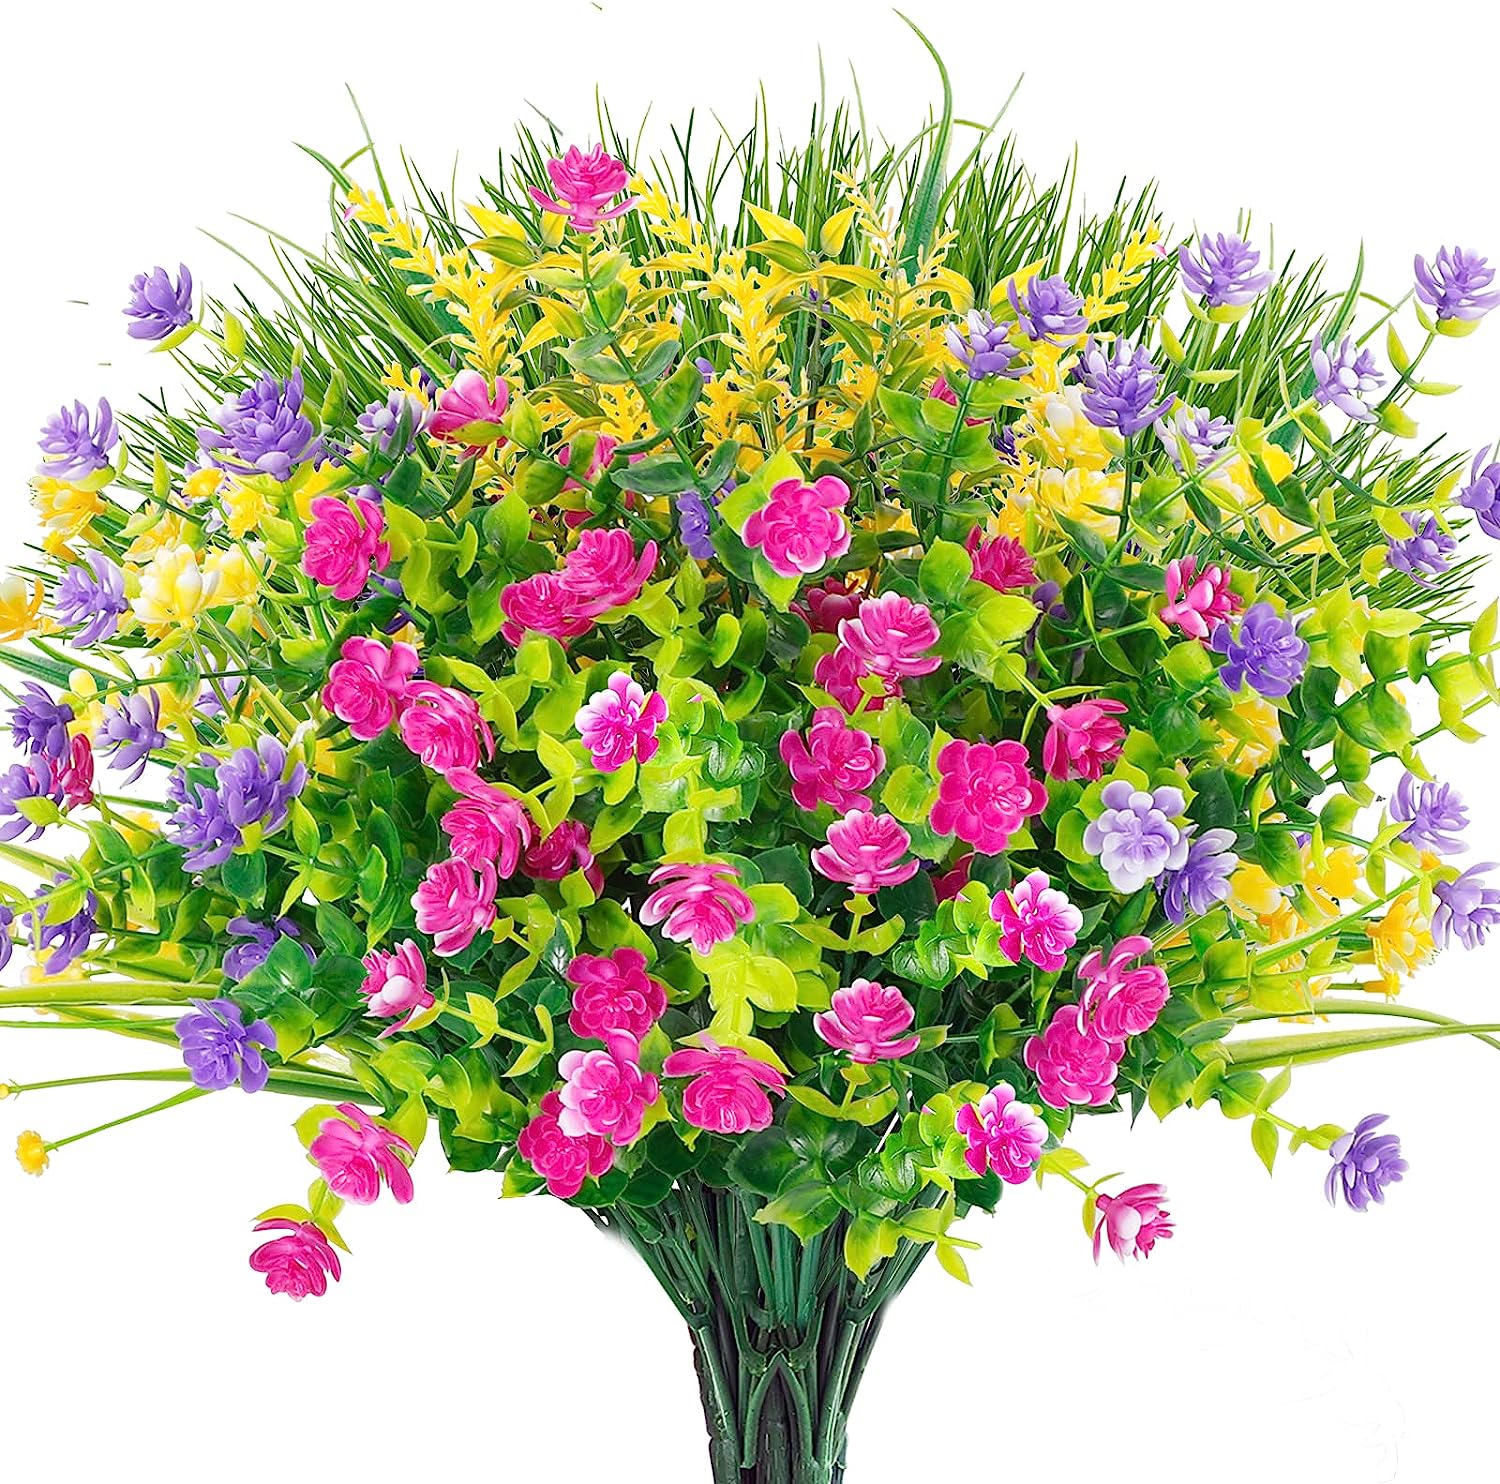 Ageomet 9pcs Artificial Flowers Outdoor UV Resistant [...]